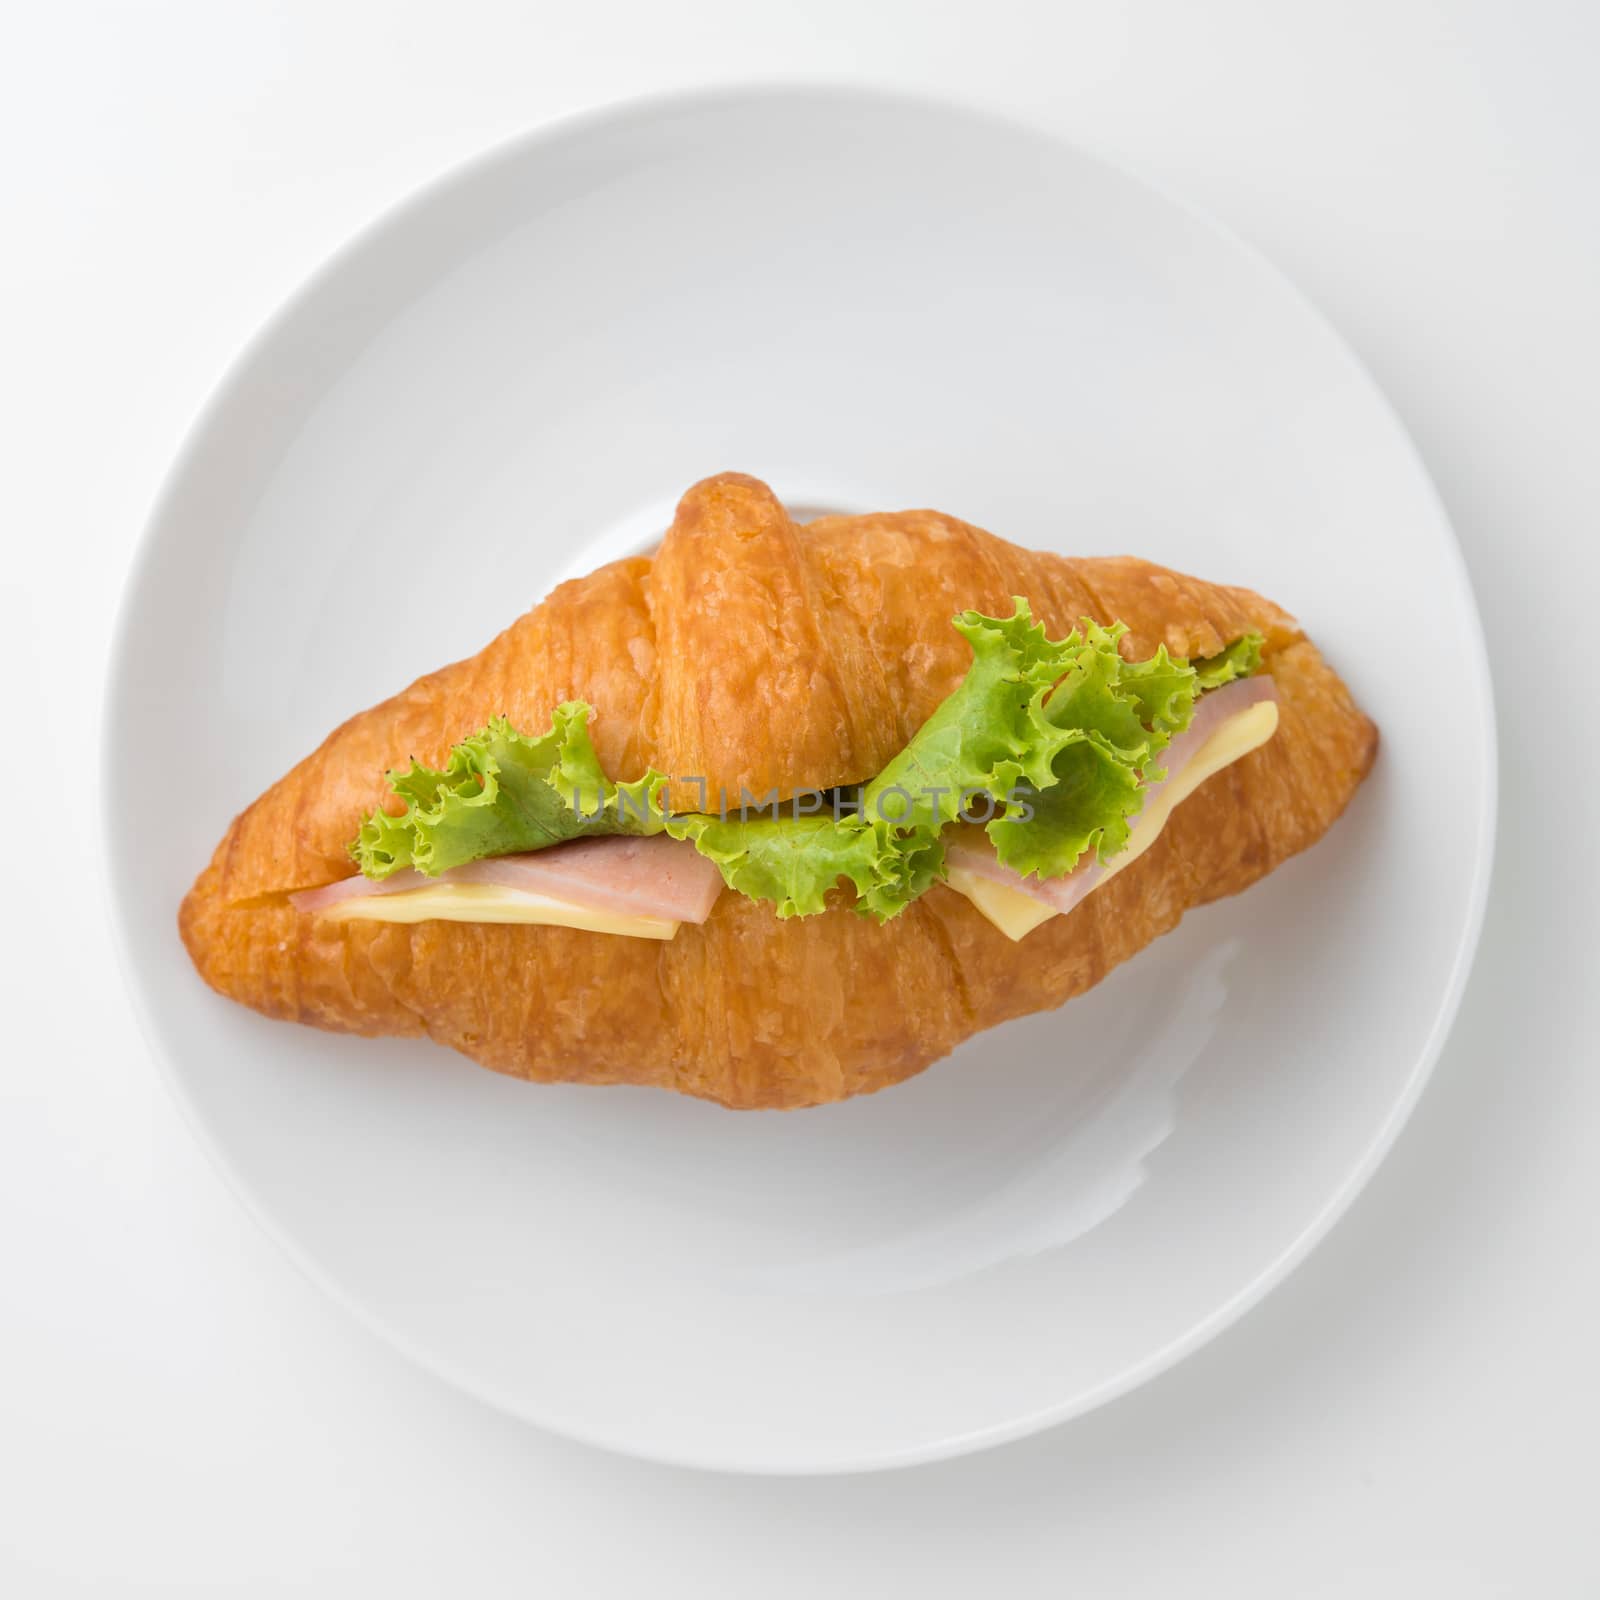 Croissant Sandwich by antpkr